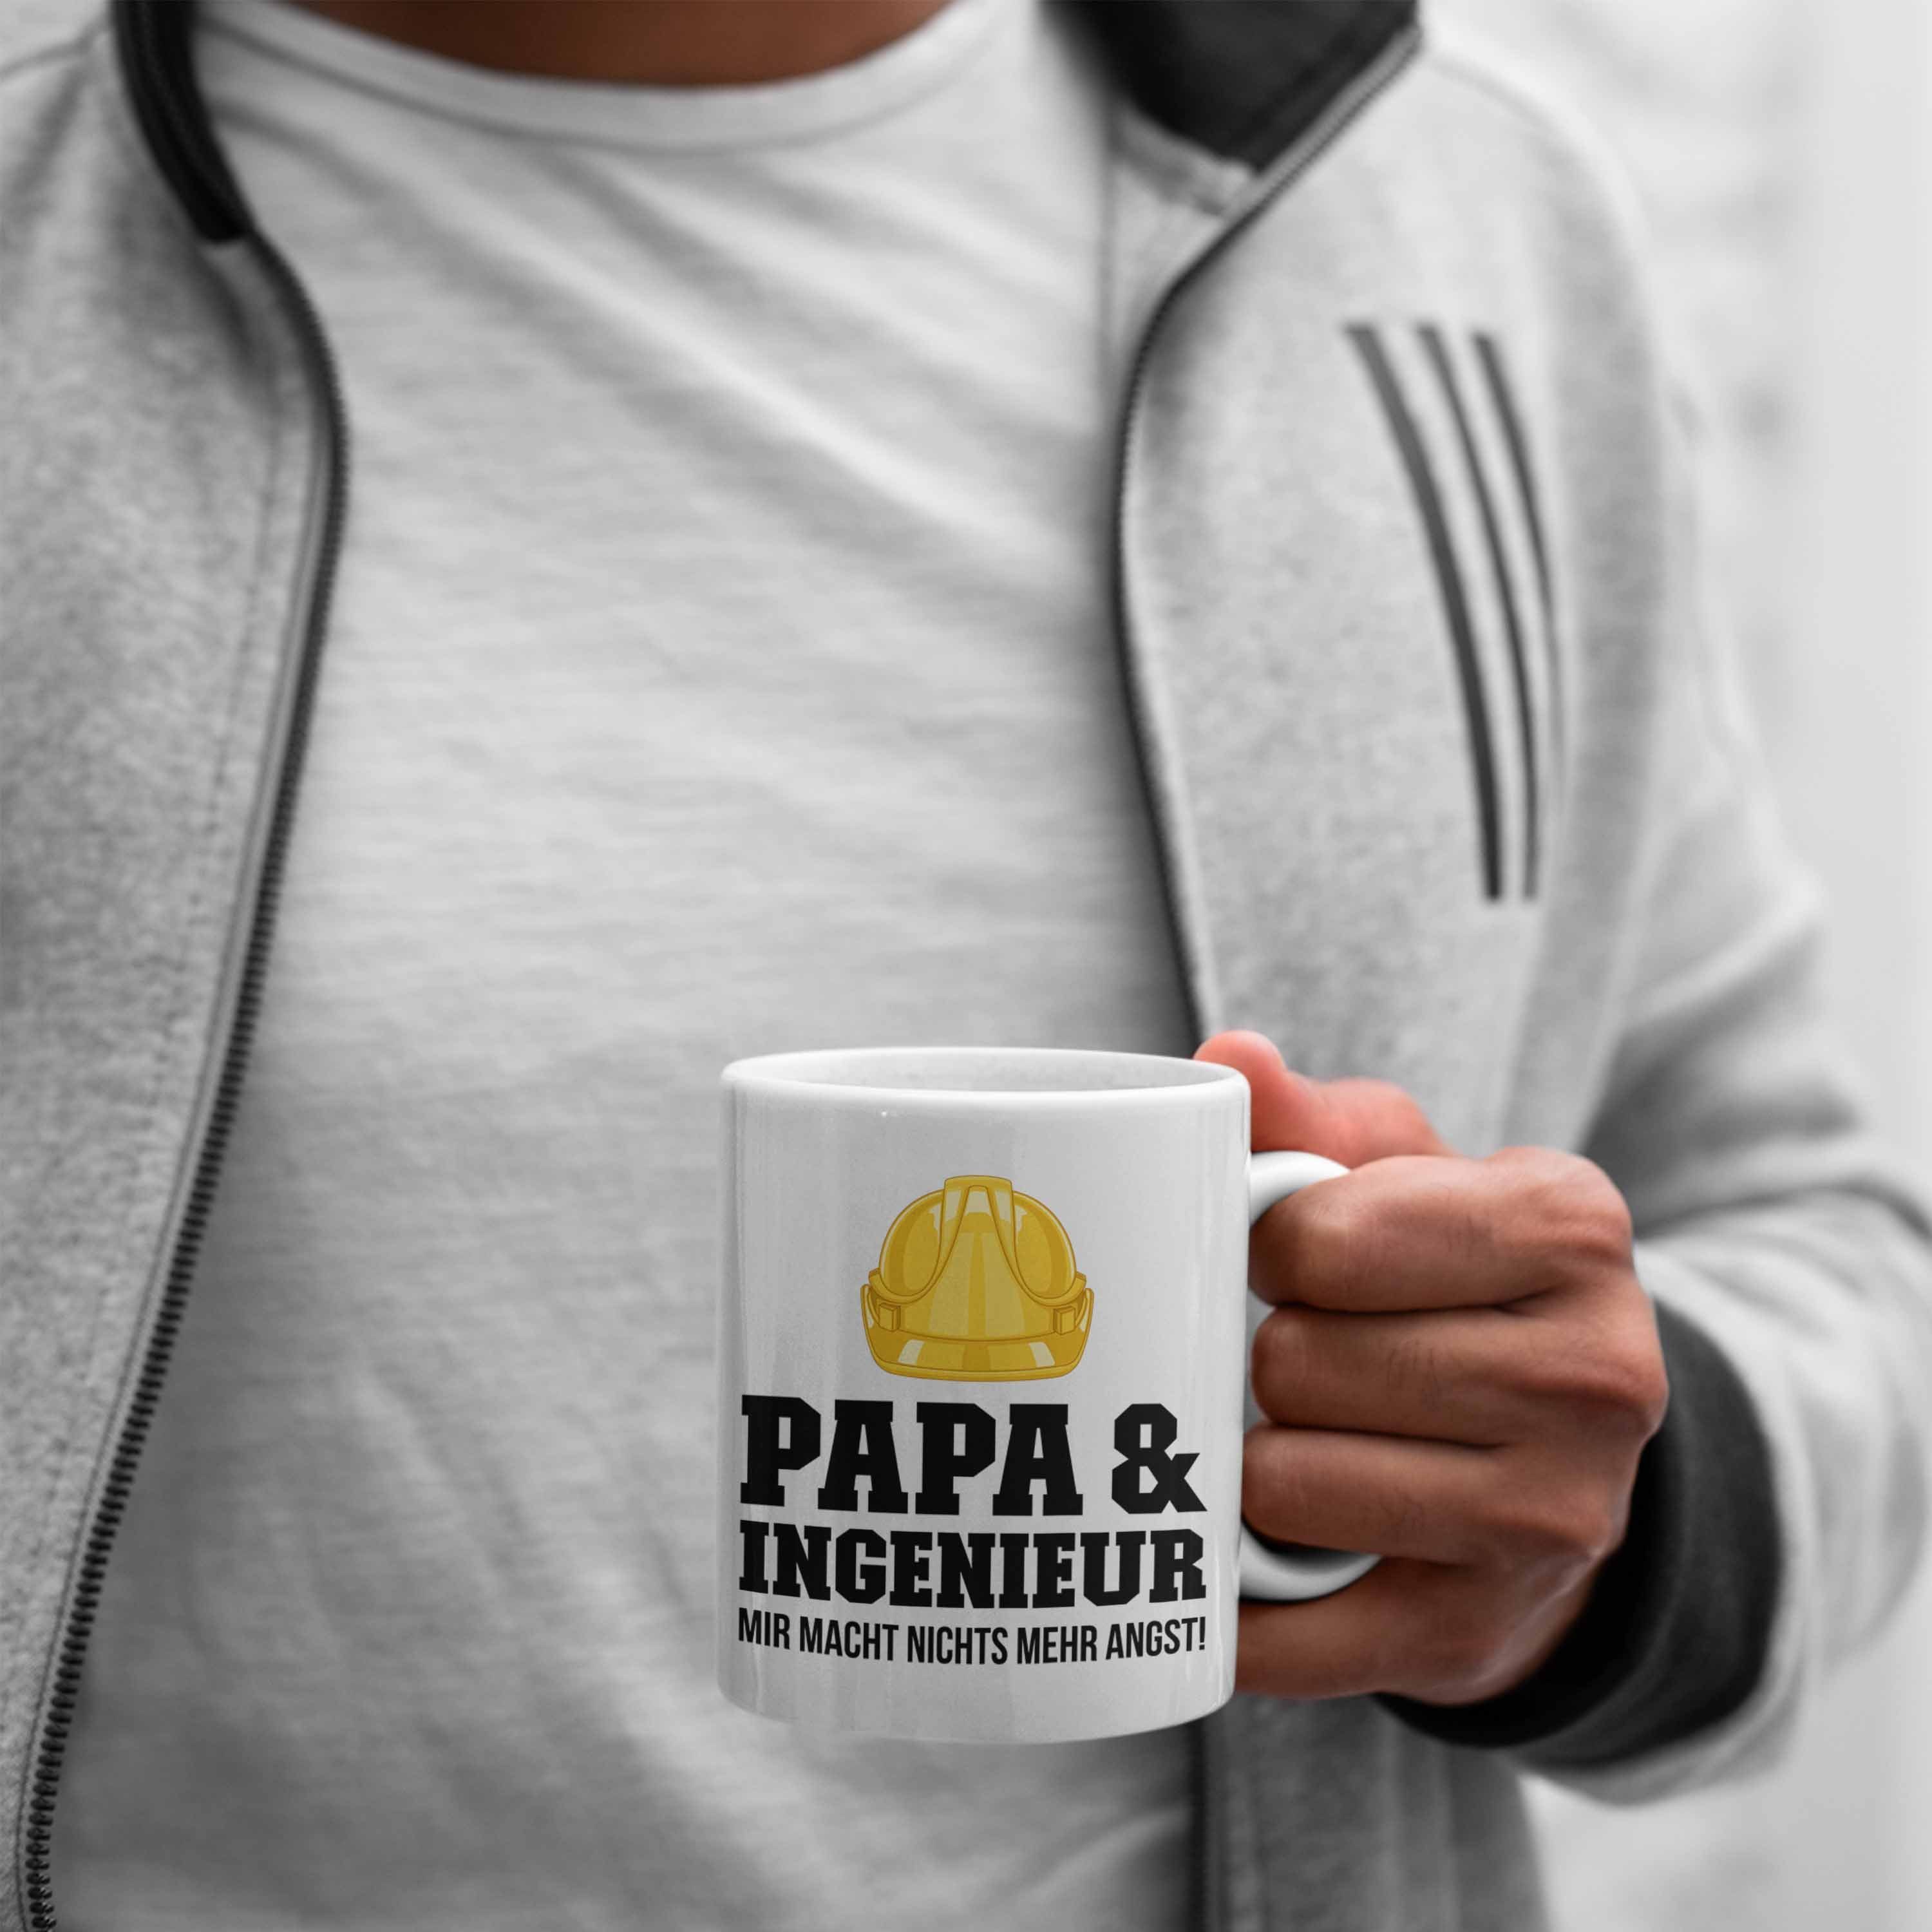 Ingeneur Tasse Trendation Weiss Trendation Geschenkidee Geschenk Kaffeetasse Tasse Ingenieur Papa Gadget -